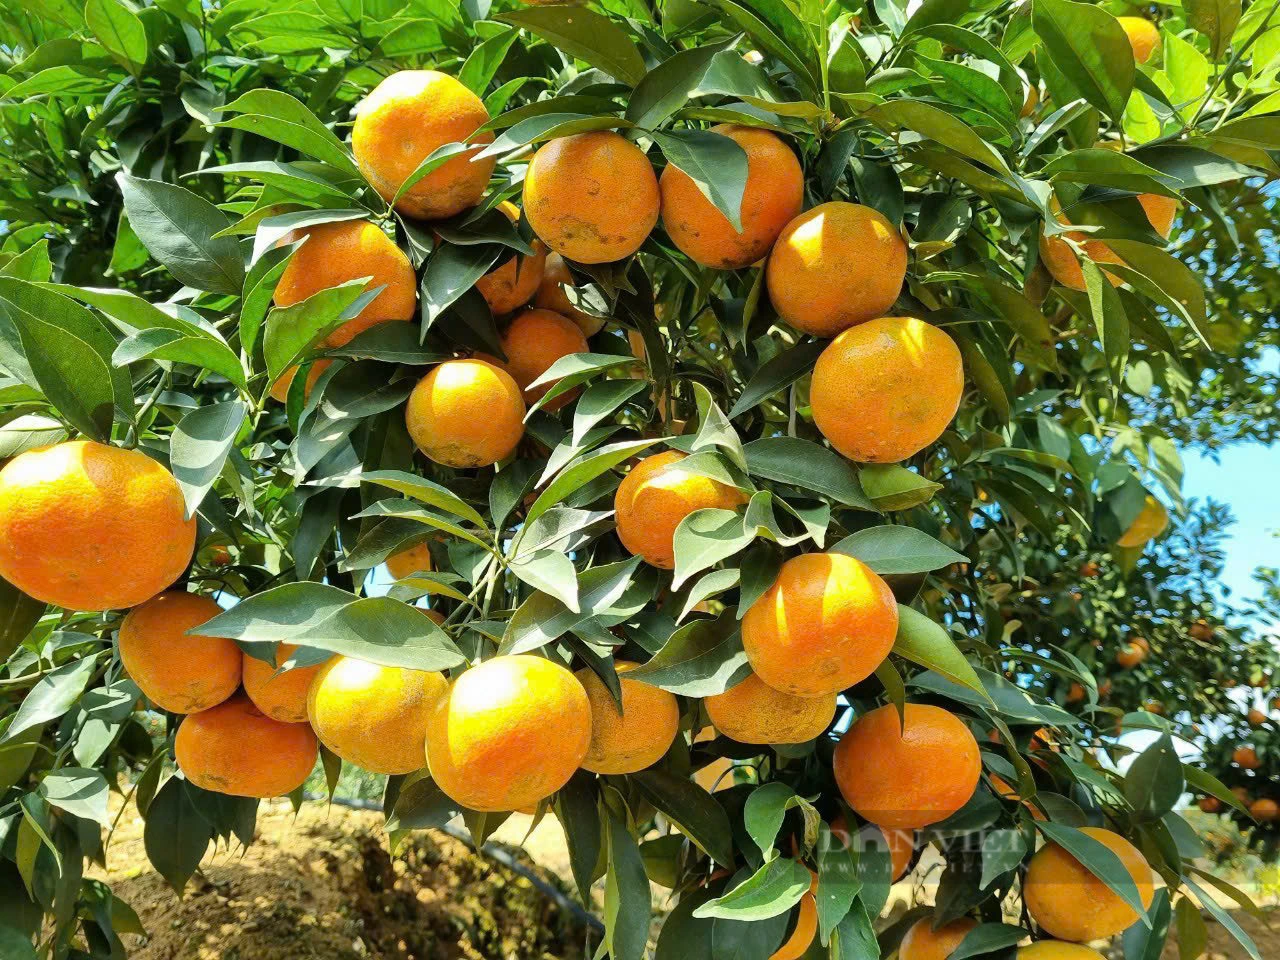 Lão nông thu tiền tỷ đầu tiên trong xã từ trồng cam trên đất đồi dốc khô cằn - Ảnh 2.